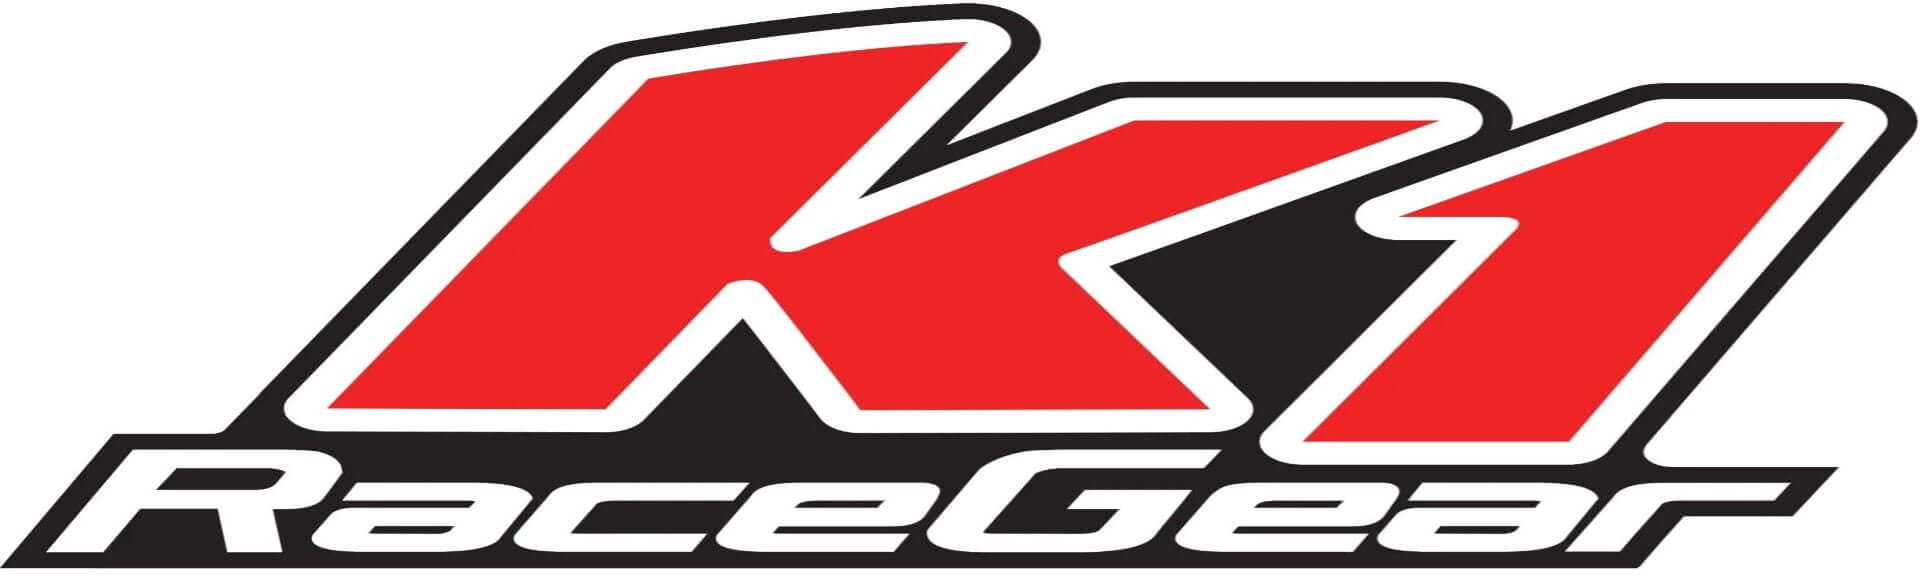 Shop K1 RaceGear Shoes - Club Racers Garage